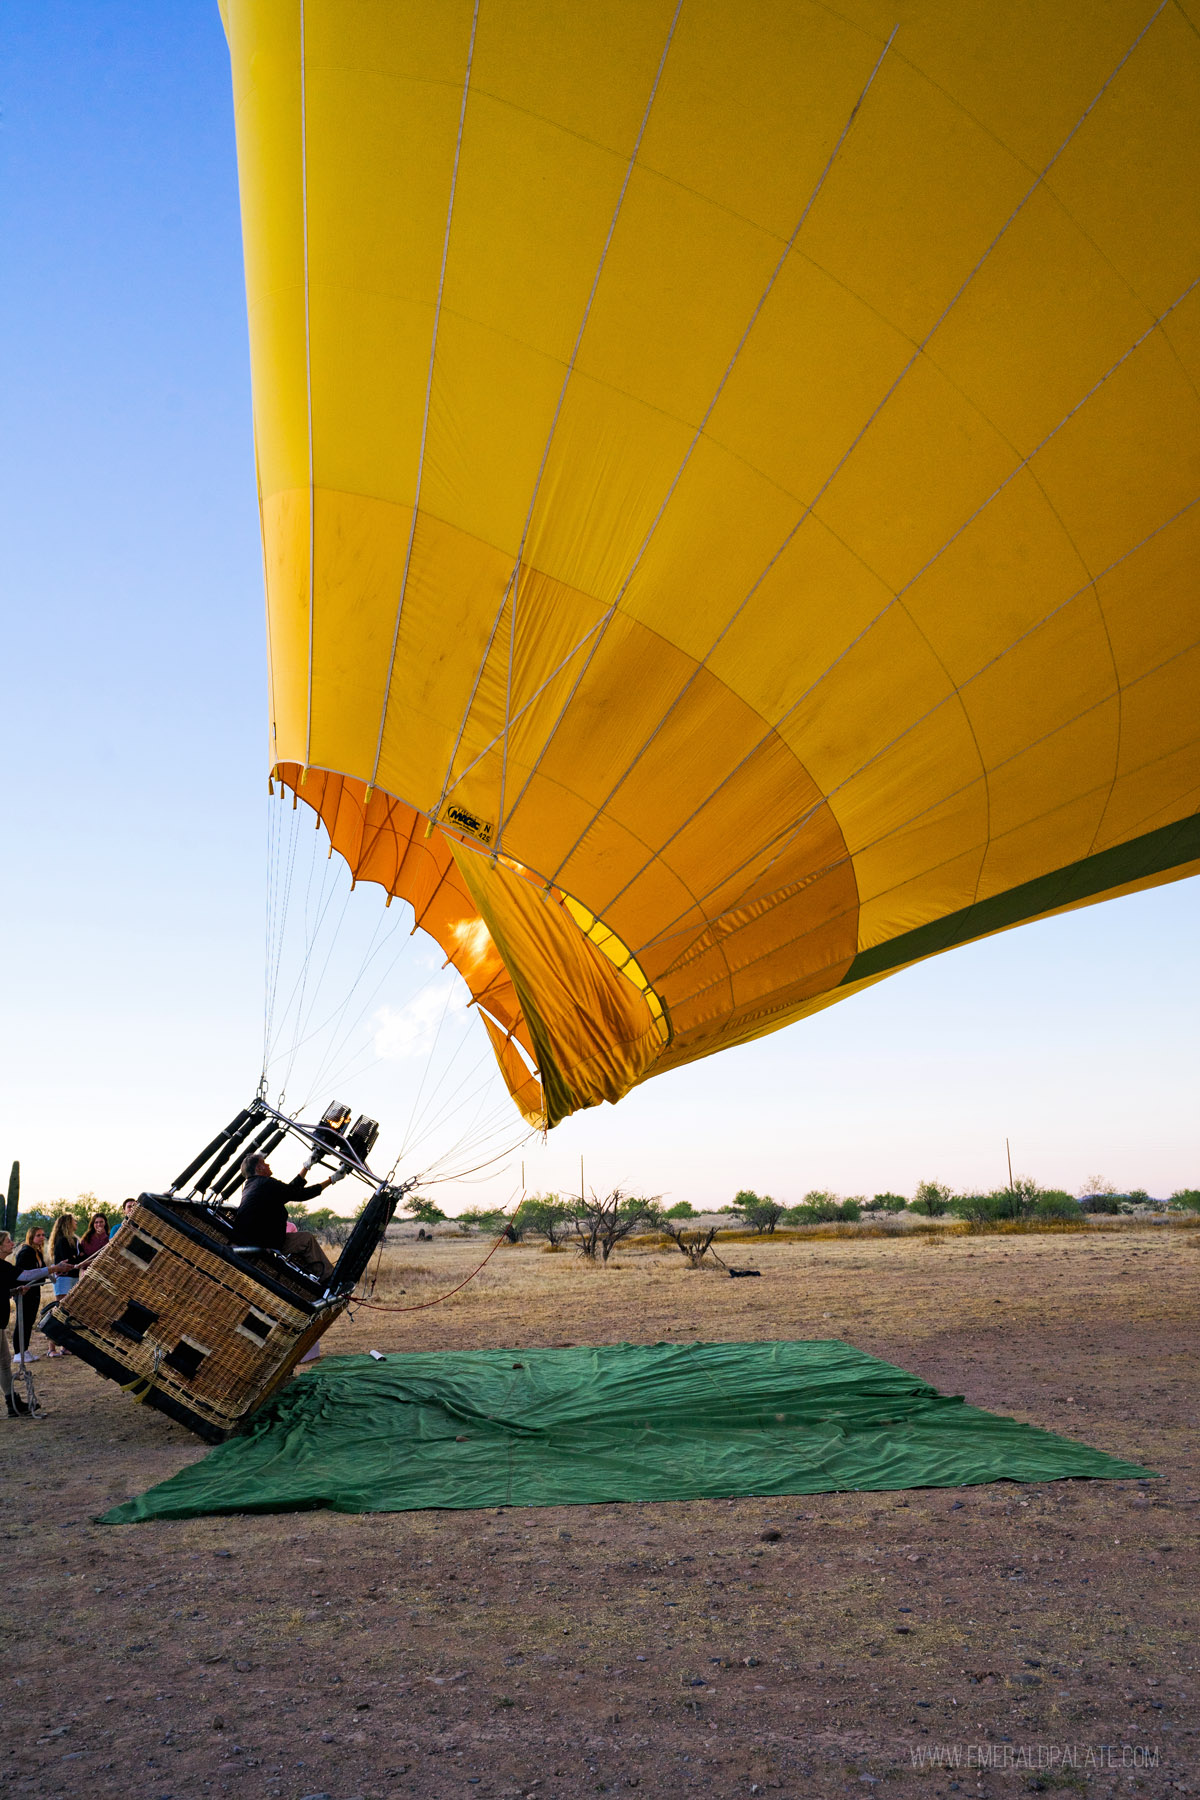 hot air balloon being tilt upright